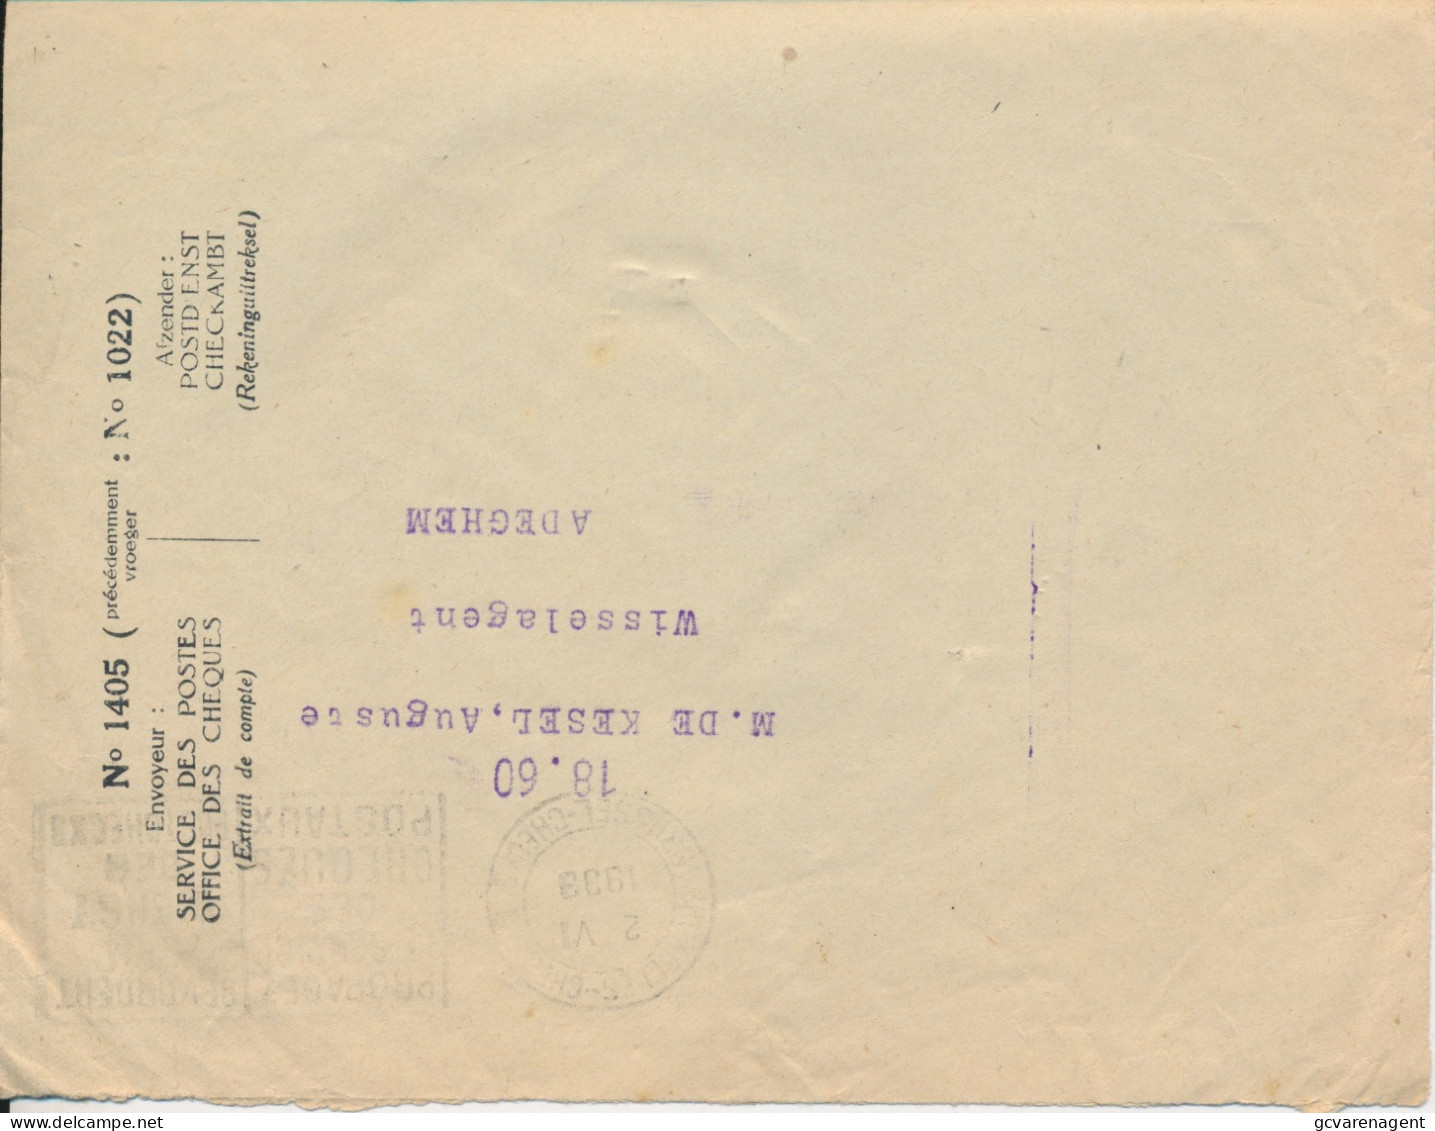 Old Envelope With Publicité 1933 Texaco Piston Oil Pour Graissage                 Farde - Covers